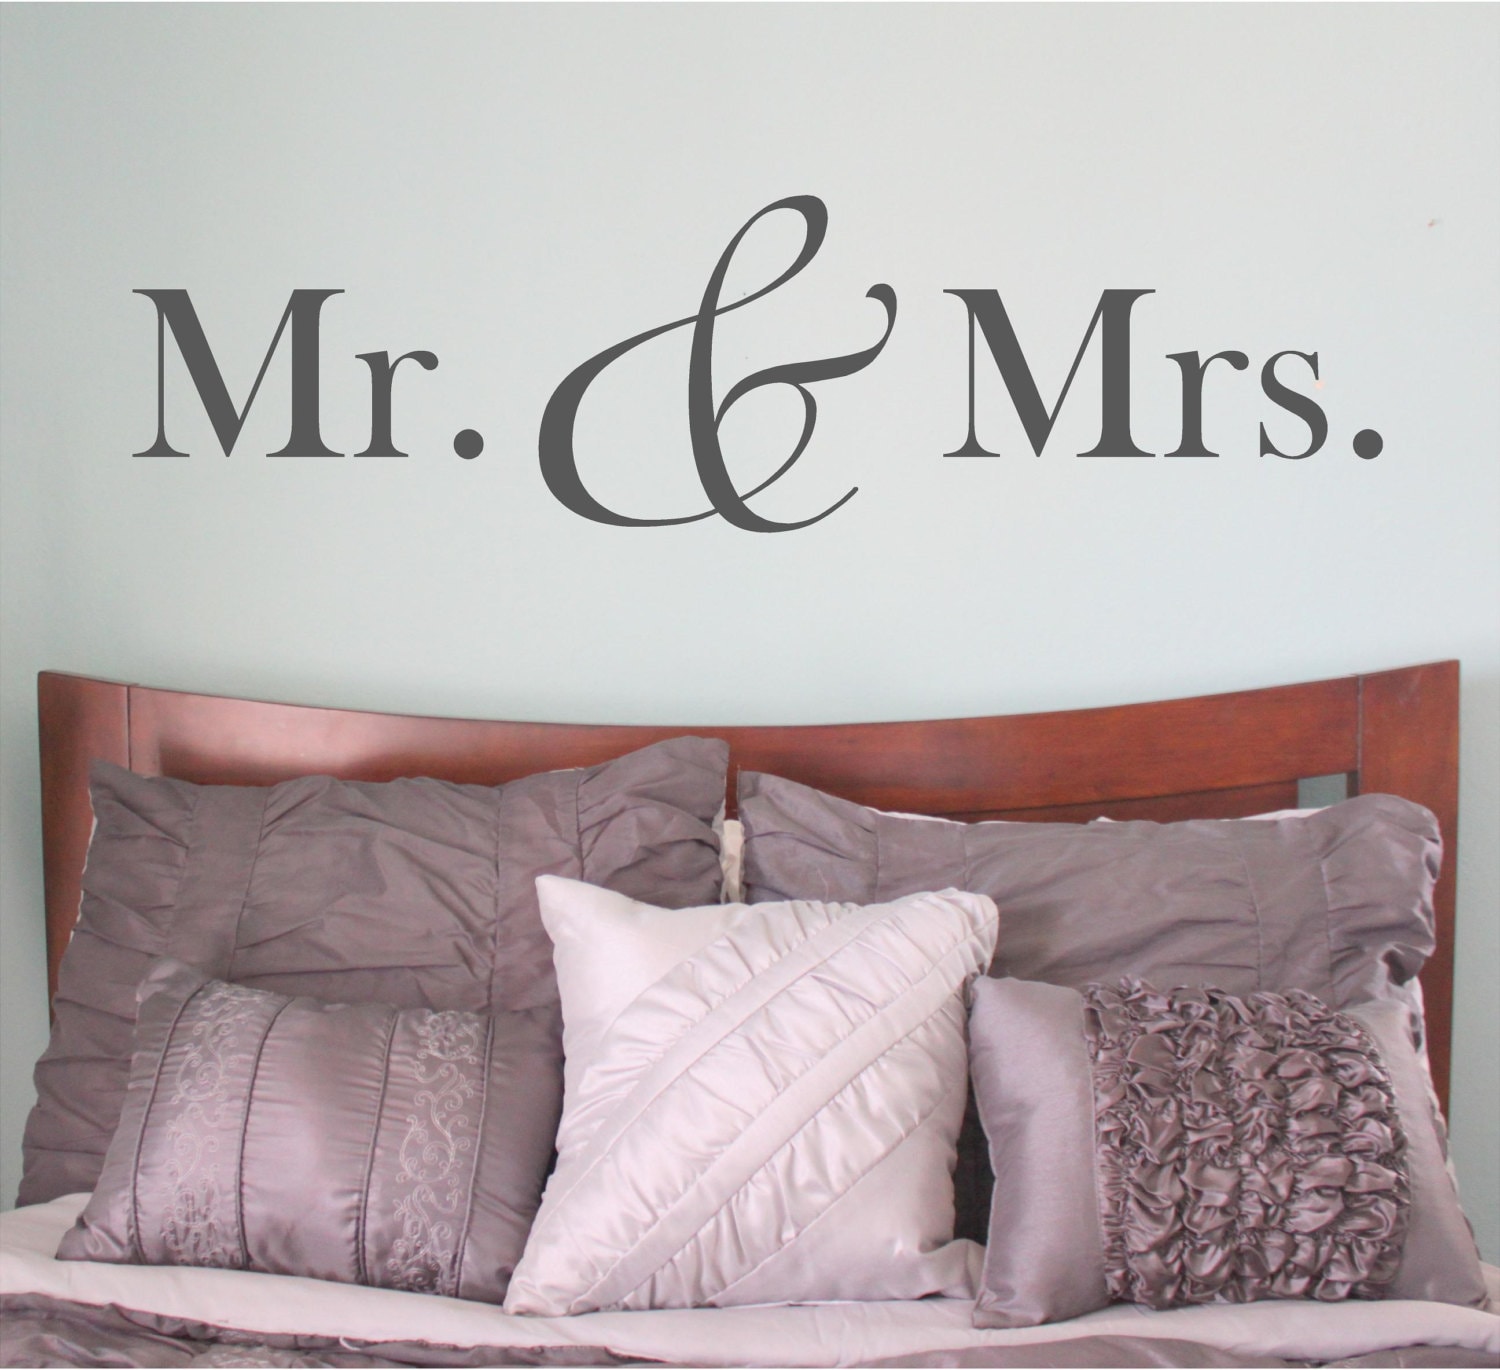 Постер для спальни над кроватью Mr & Mrs. Mr Mrs Kelly. Mr and Mrs s Murphy перевод. Mr Mrs logo.